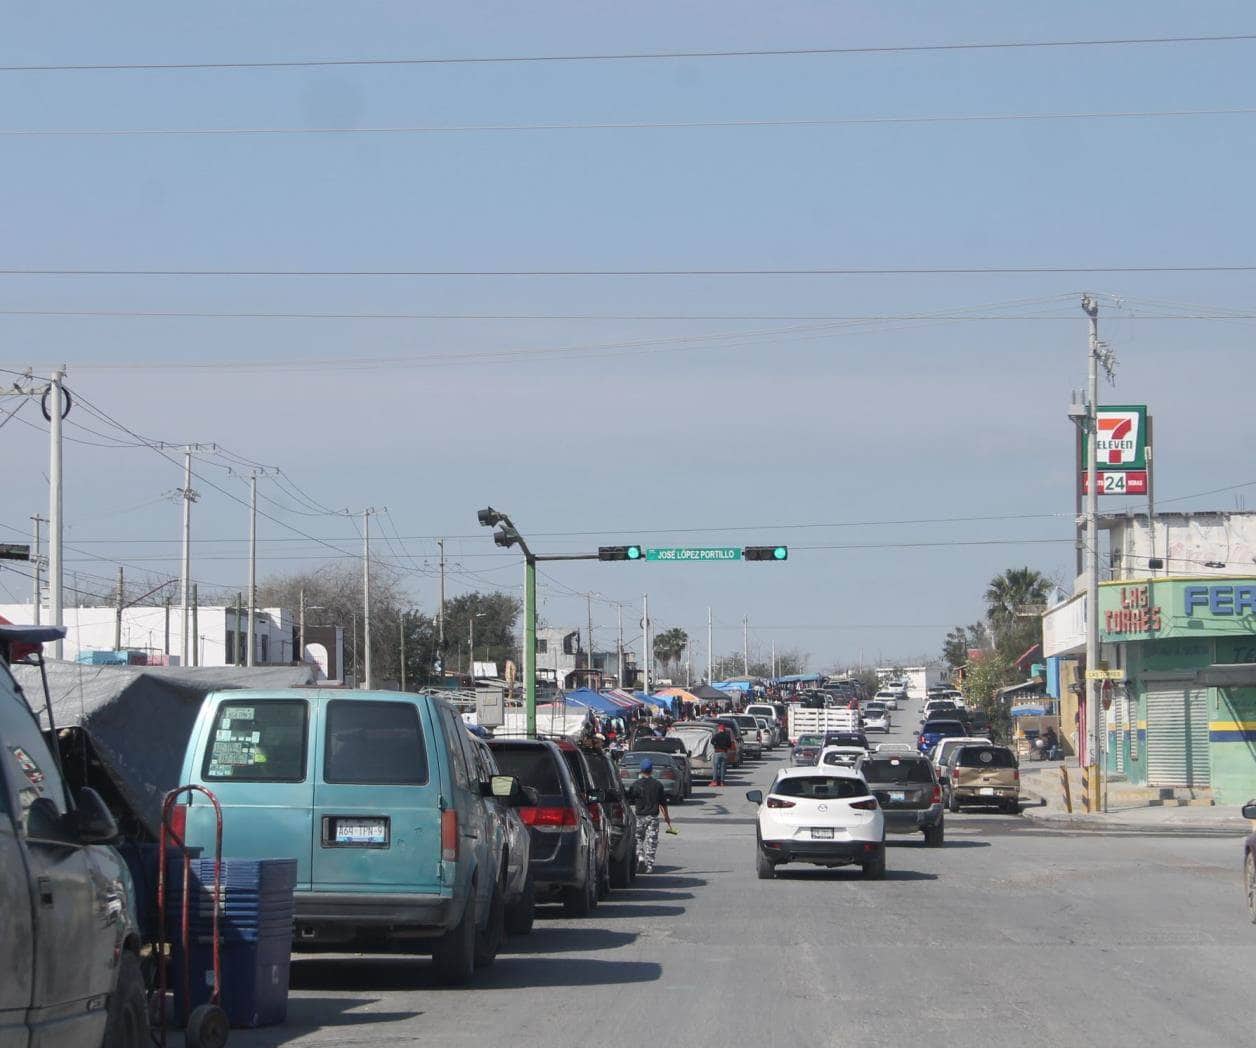 Ventas en Tianguis en Reynosa a la alza